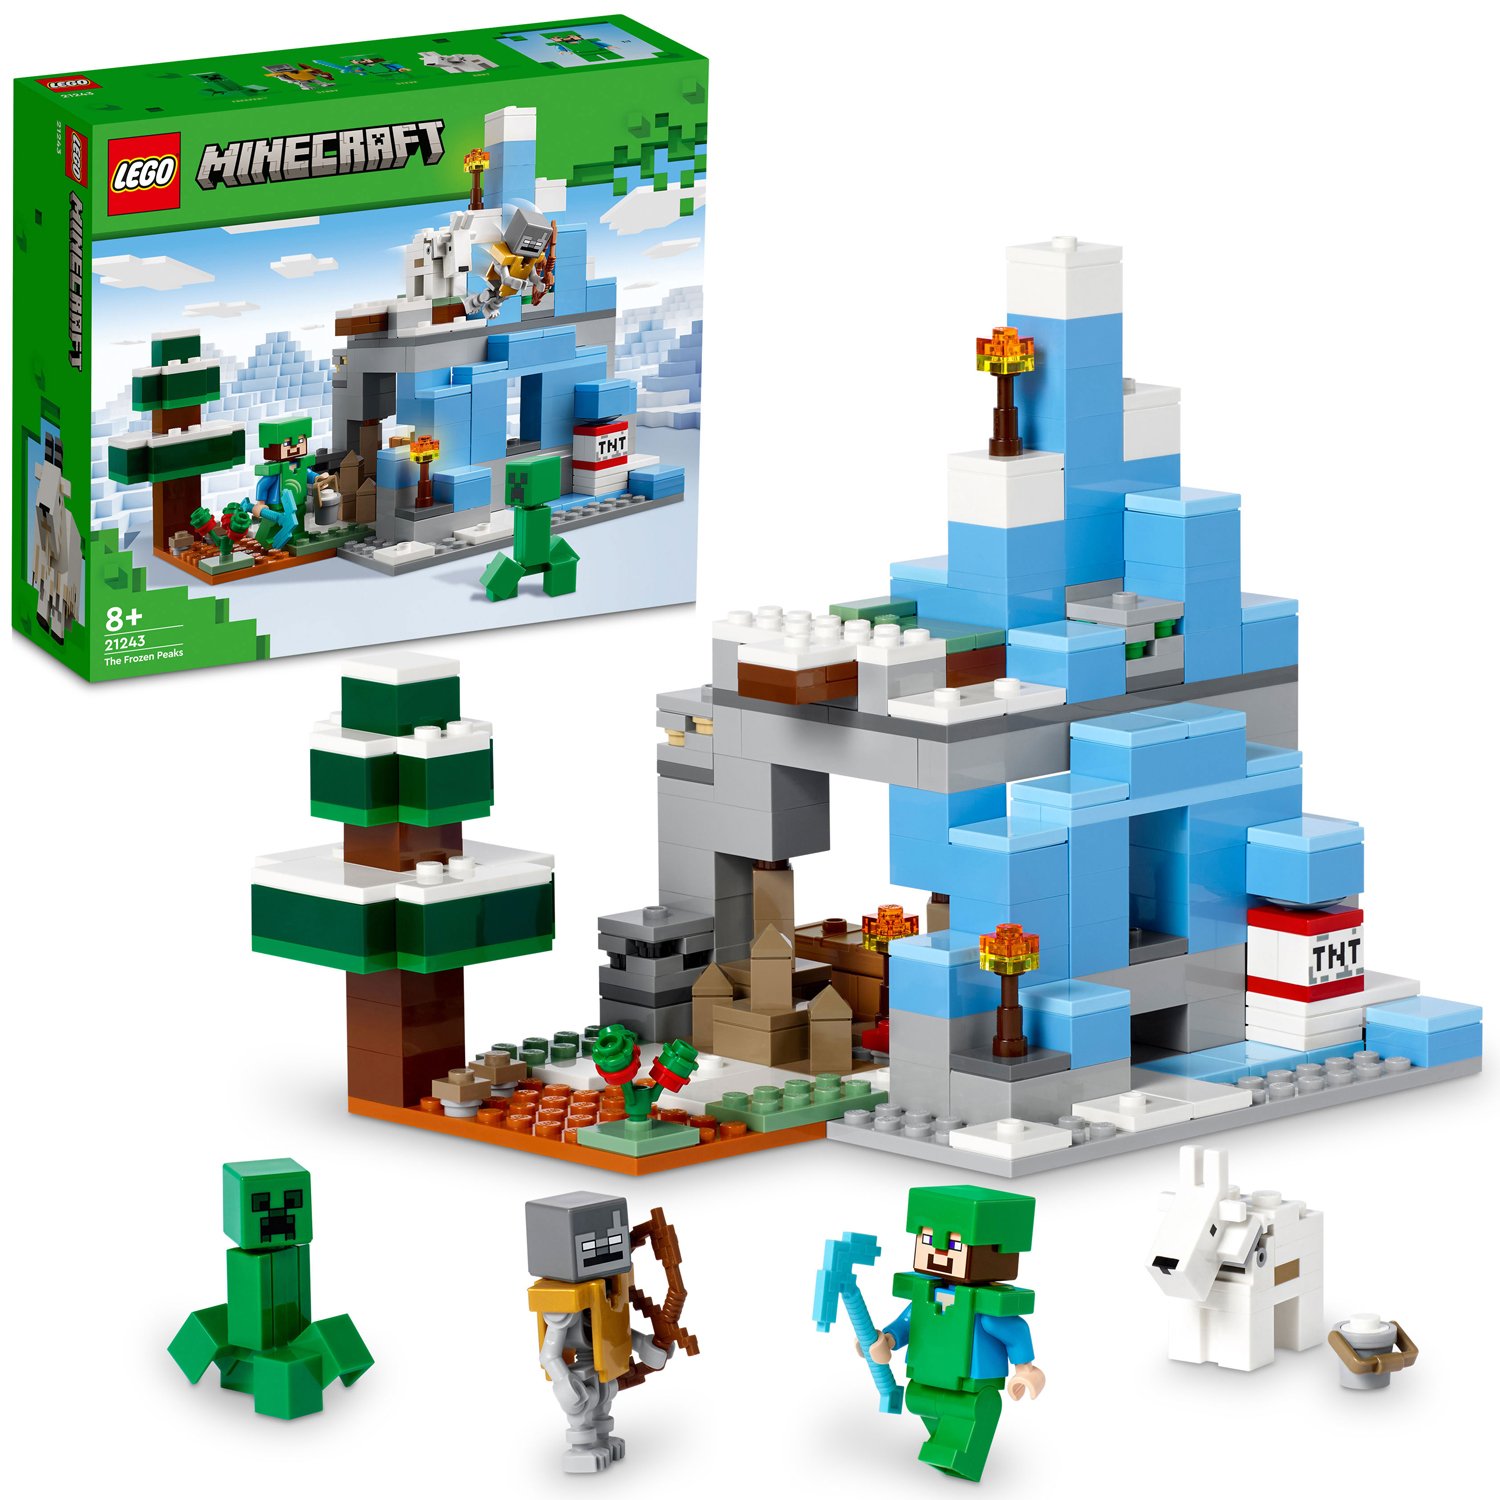 Läs mer om LEGO Minecraft De frostiga bergen 21243